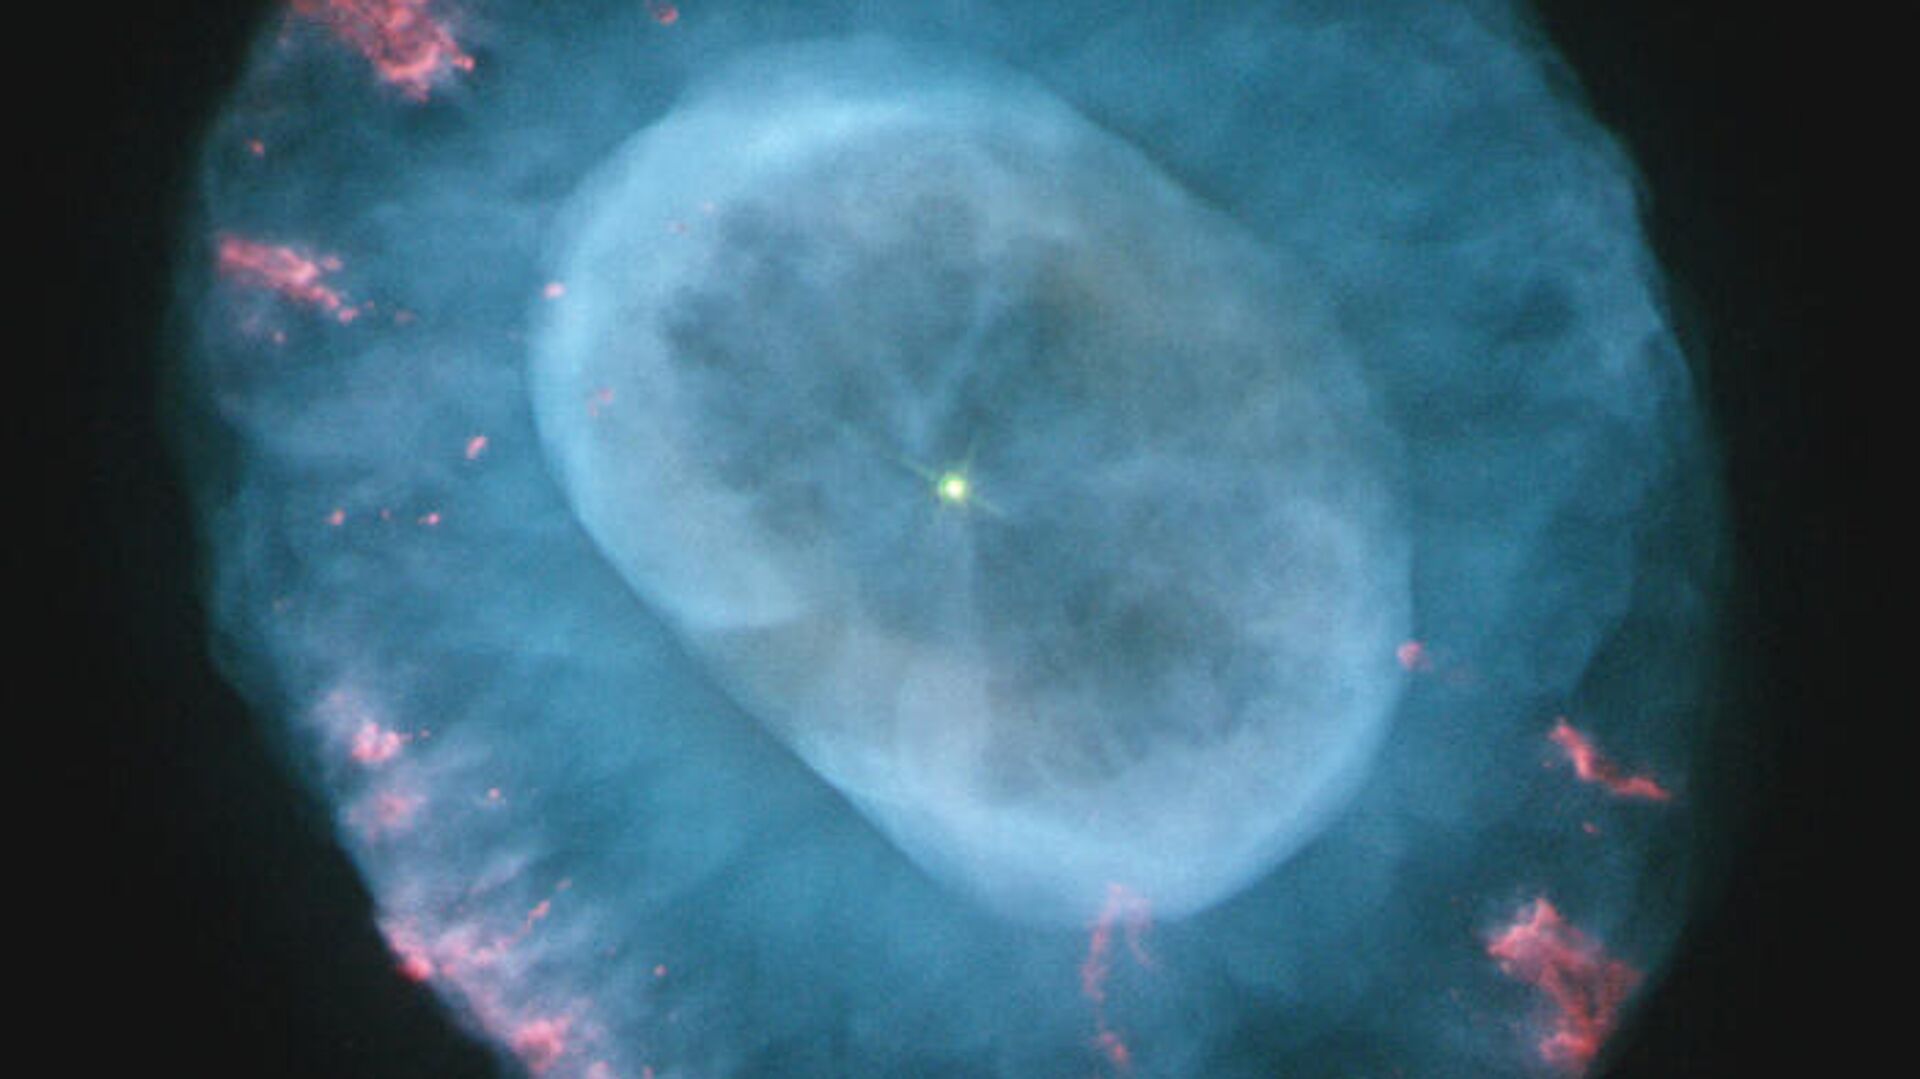 Туманность NGC 7662 Голубой Снежок похожа на ту, в которой взорвалась сверхновая LSQ14fmg - РИА Новости, 1920, 11.09.2020